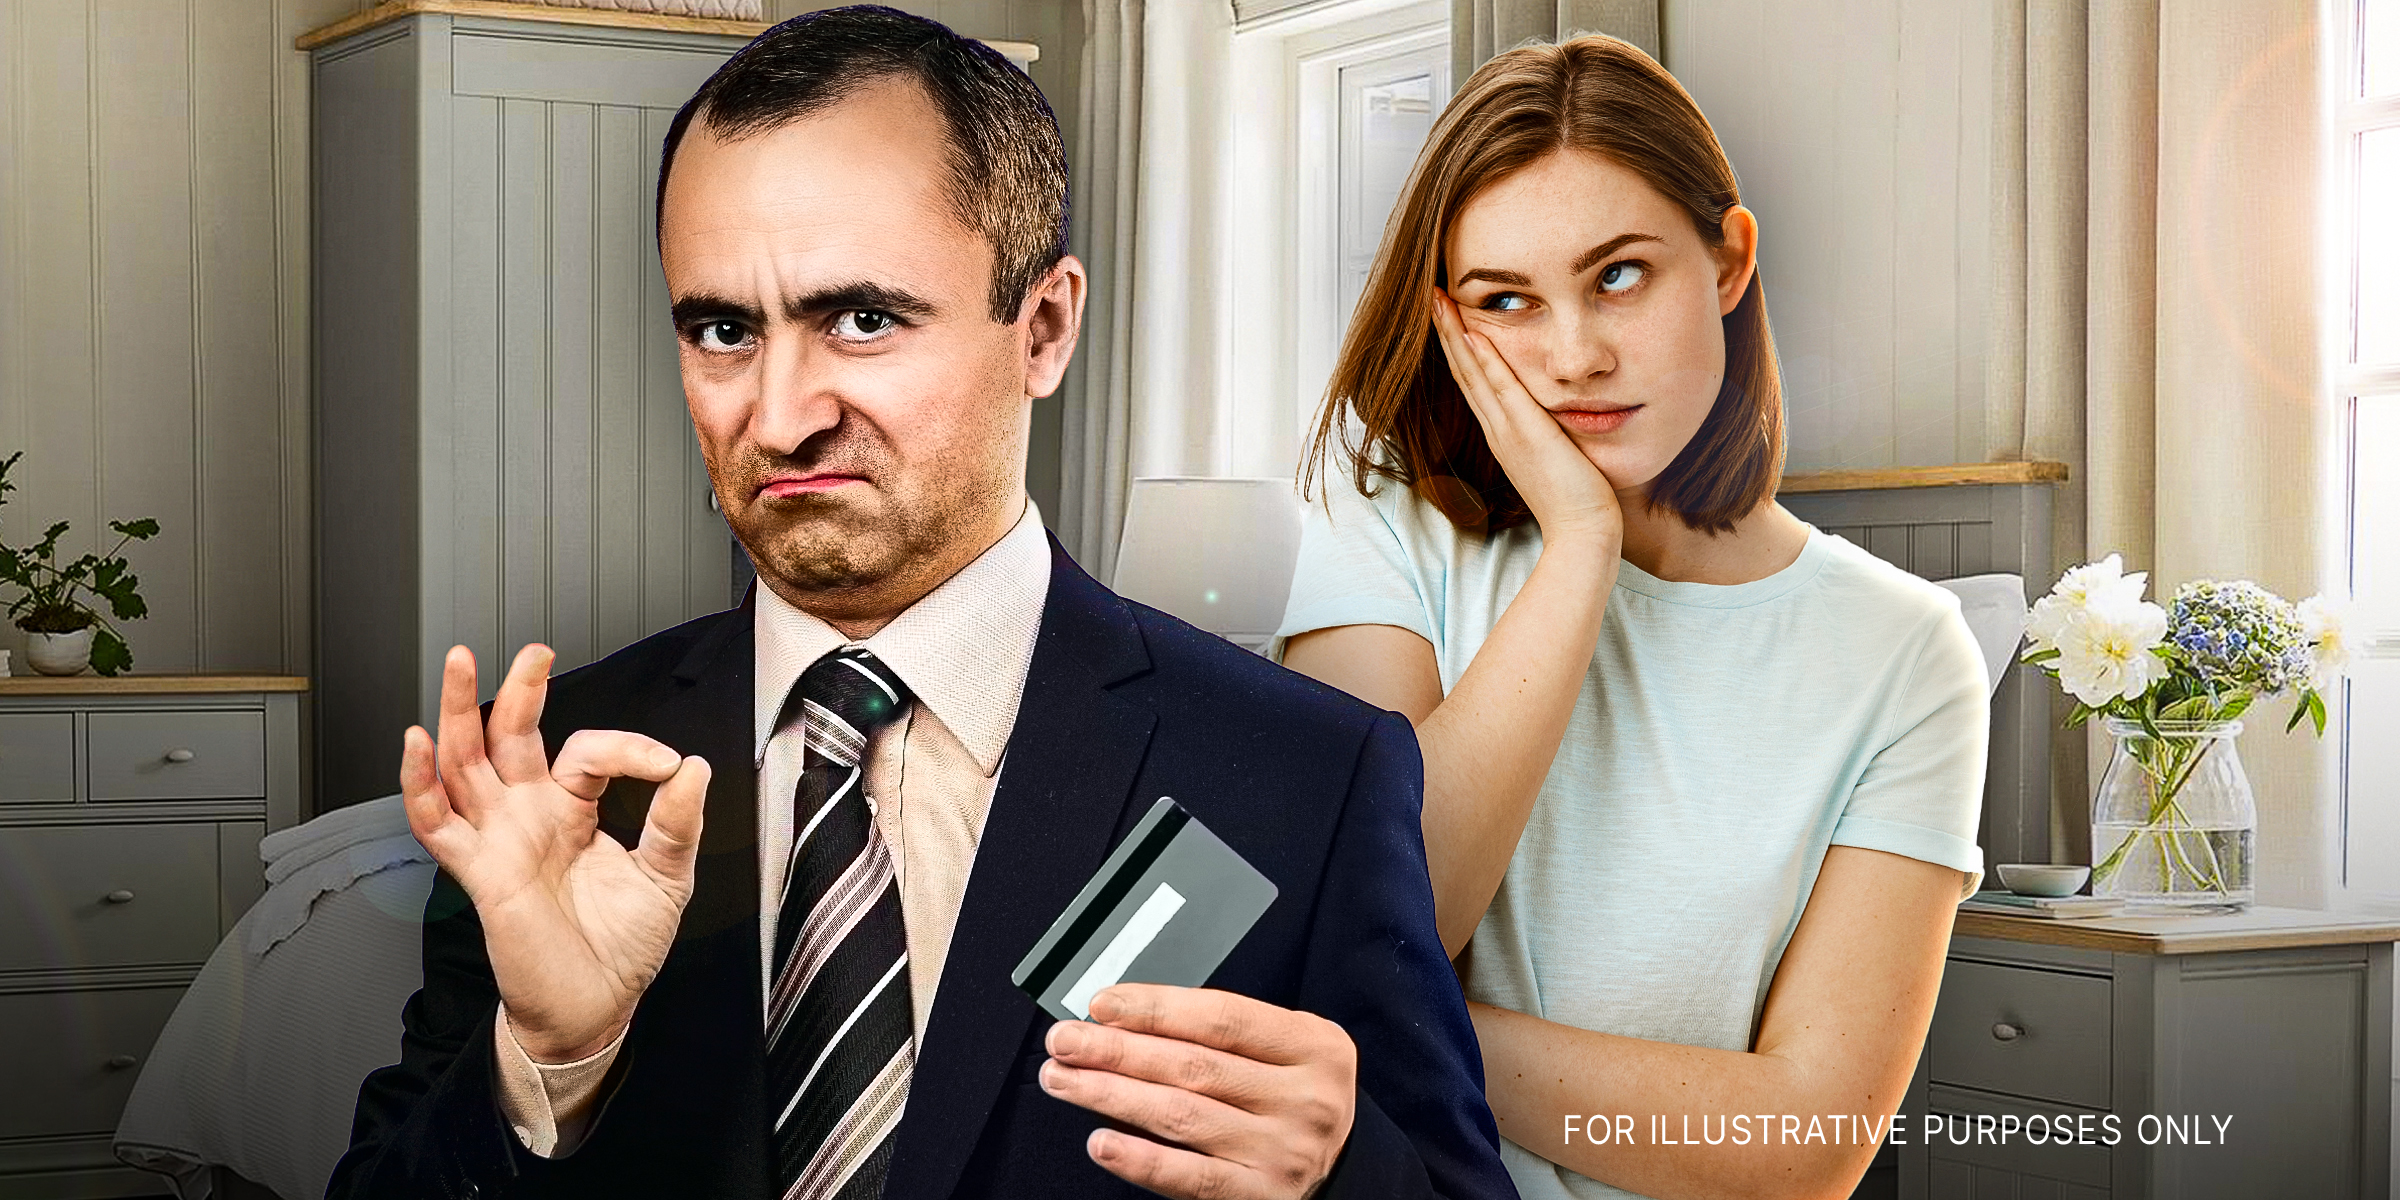 Un homme à l'allure arrogante tient une carte bancaire tandis qu'une femme à côté de lui a l'air ennuyé | Source : Shutterstock